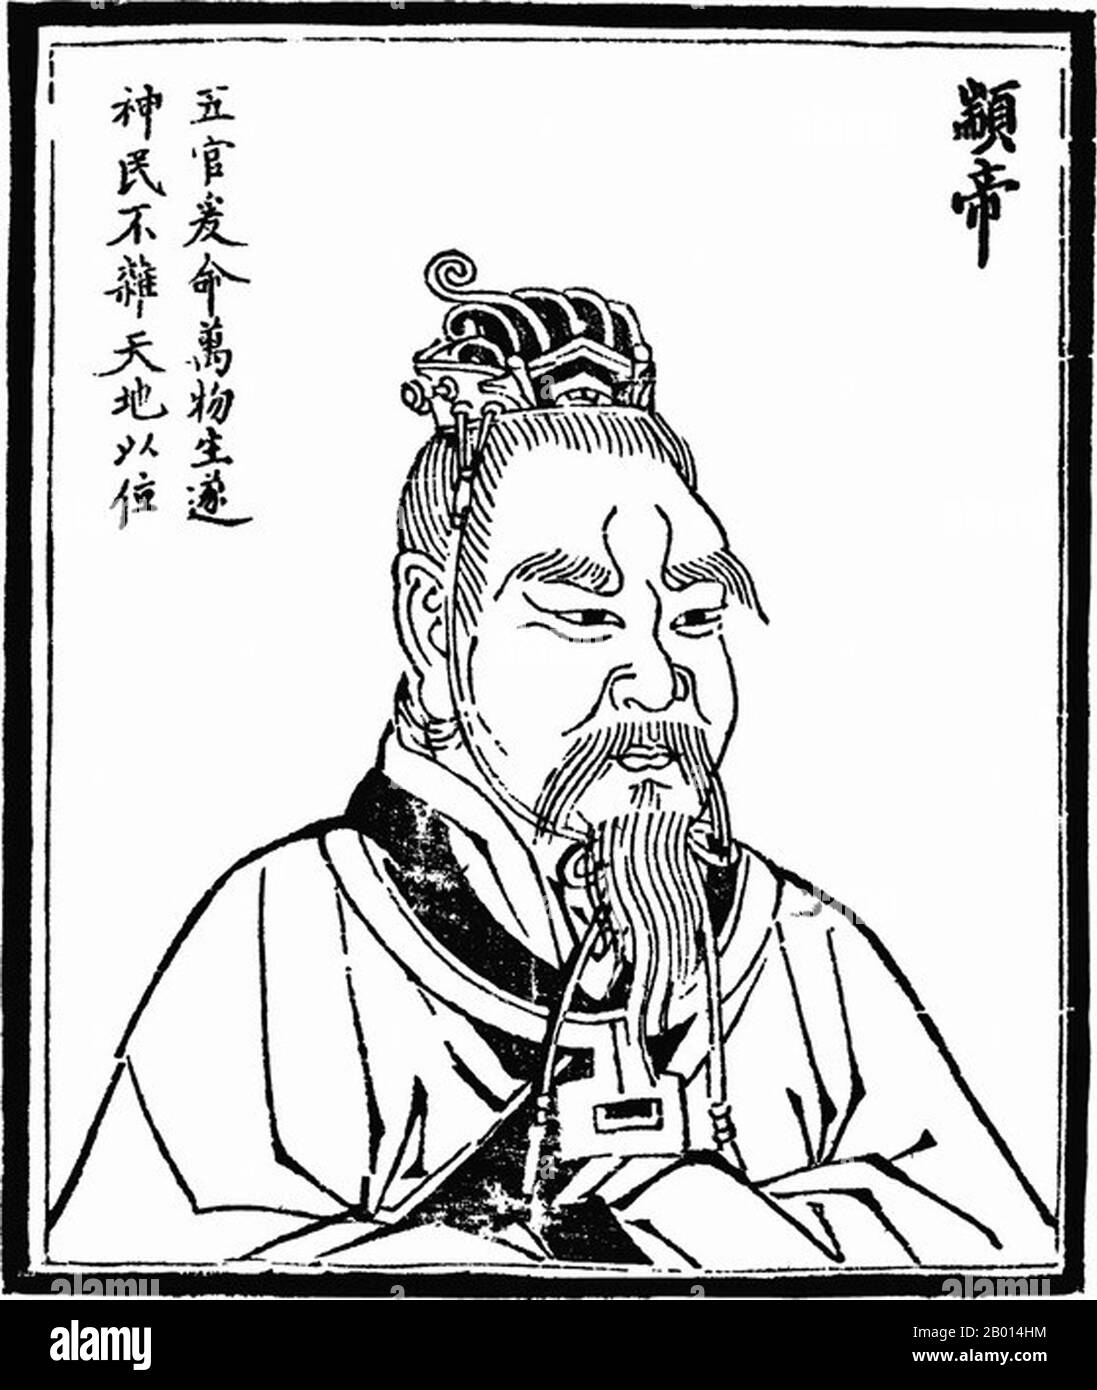 China: Kaiser Zhuanxu (ca. 2514-2436 v. Chr.), zweiter der legendären "fünf Kaiser". Abbildung, c. 1498. Zhuanxu, auch bekannt als Gaoyang, war ein mythologischer Kaiser des alten China. Als Enkel des Gelben Imperators wurde er im Alter von zwanzig Jahren souverän. Er verabschiedete religiöse Reformen gegen den Schamanismus und trug zu einem einheitlichen Kalender sowie zum Astrologie-Bereich bei. Manchmal wird er als der gott des Polarsterns verehrt. Die drei Herrscher und fünf Kaiser sind eine Mischung aus mythologischen Herrschern und kulturellen Helden des alten China aus der Zeit c. 3500-2000 BCE. Stockfoto